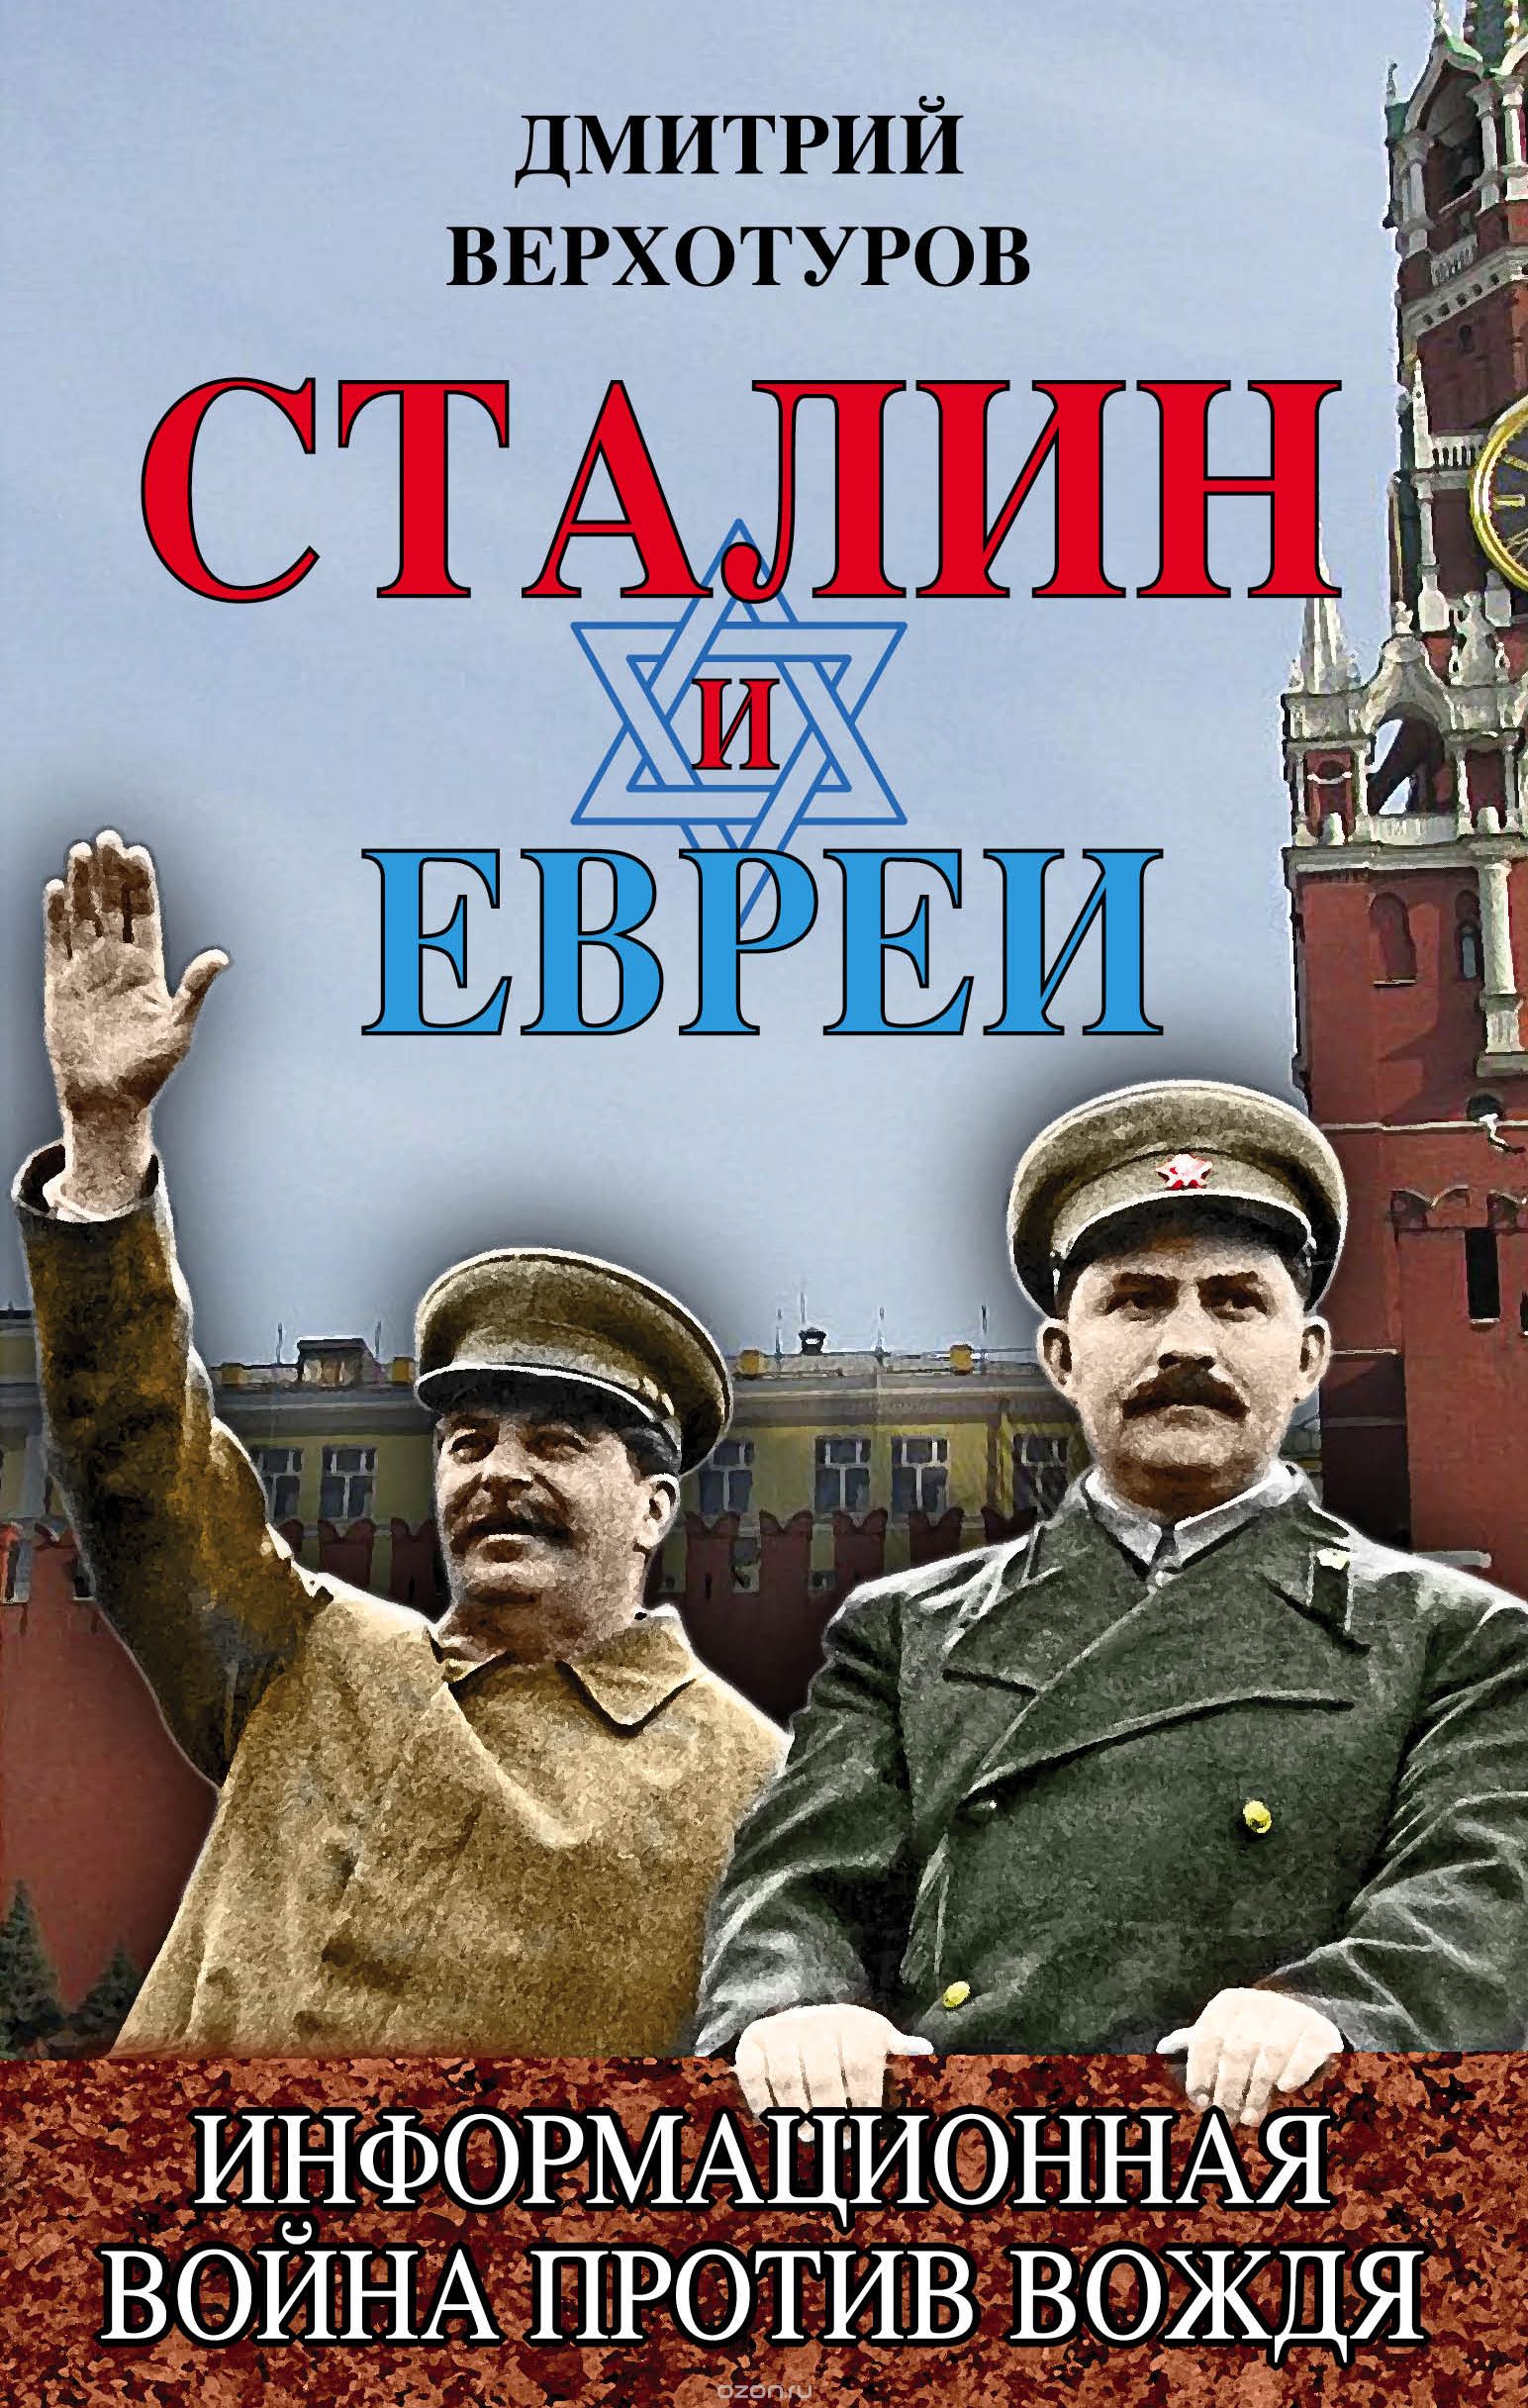 Скачать книгу "Сталин и евреи. Информационная война против Вождя, Верхотуров Дмитрий Николаевич"